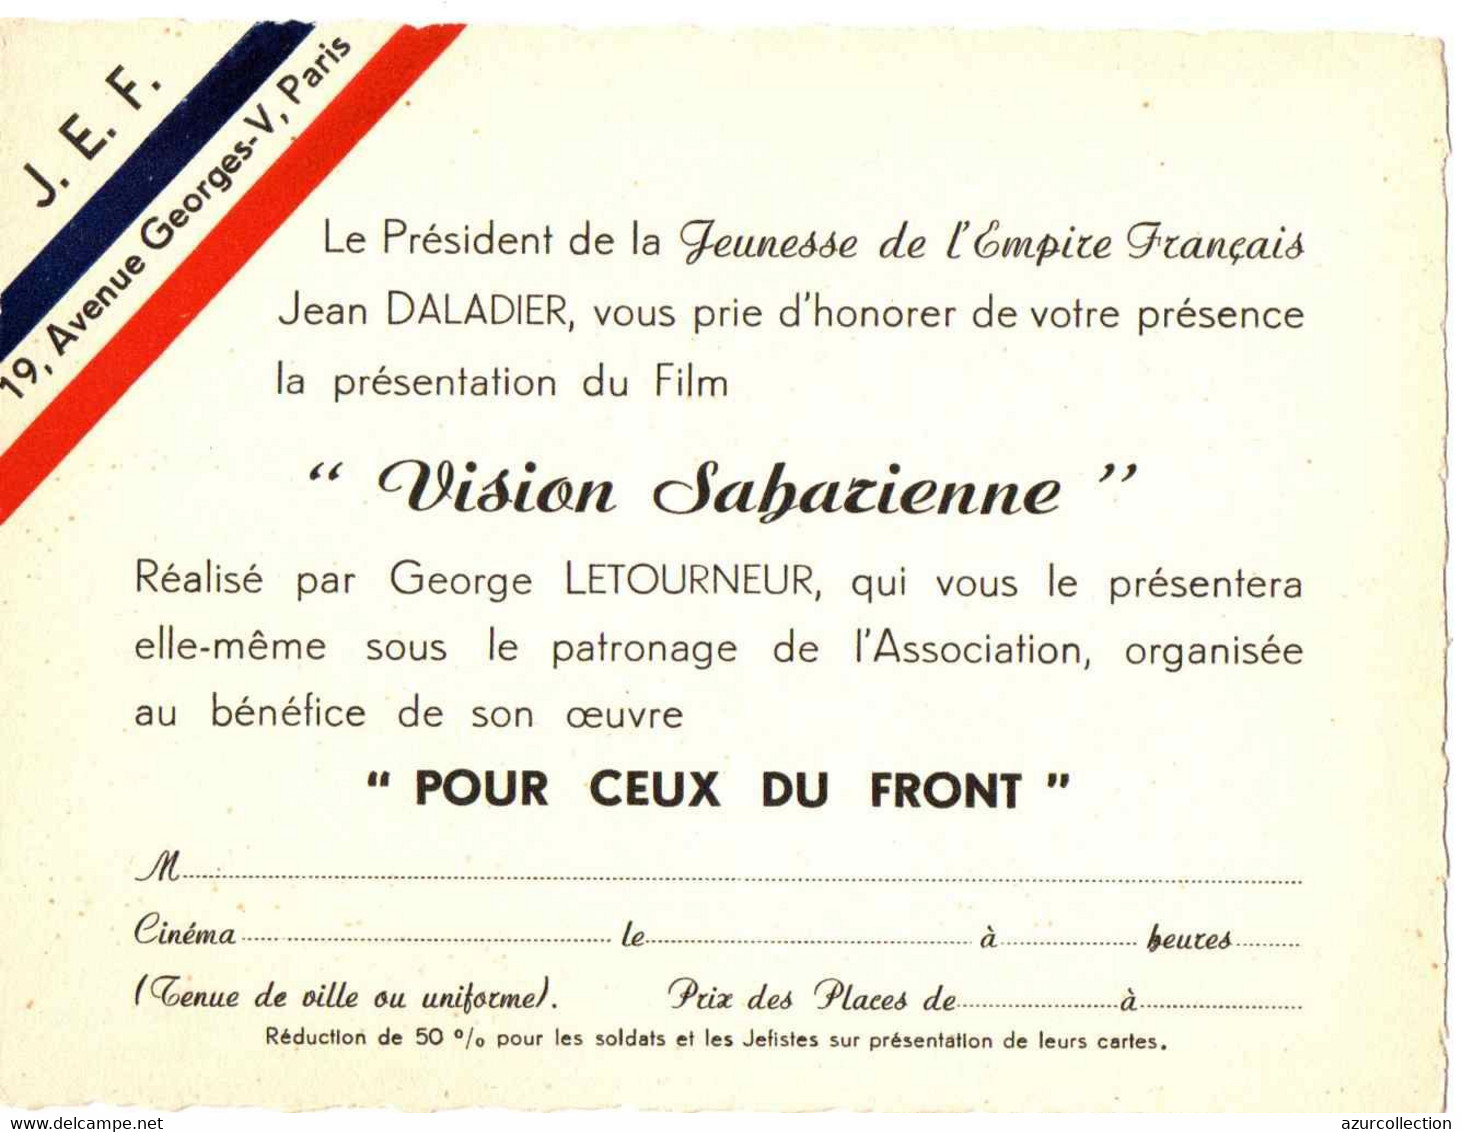 Jeunesse de l'Empire français - Les jeunes au service de l'Empire 1938-1941 993_001